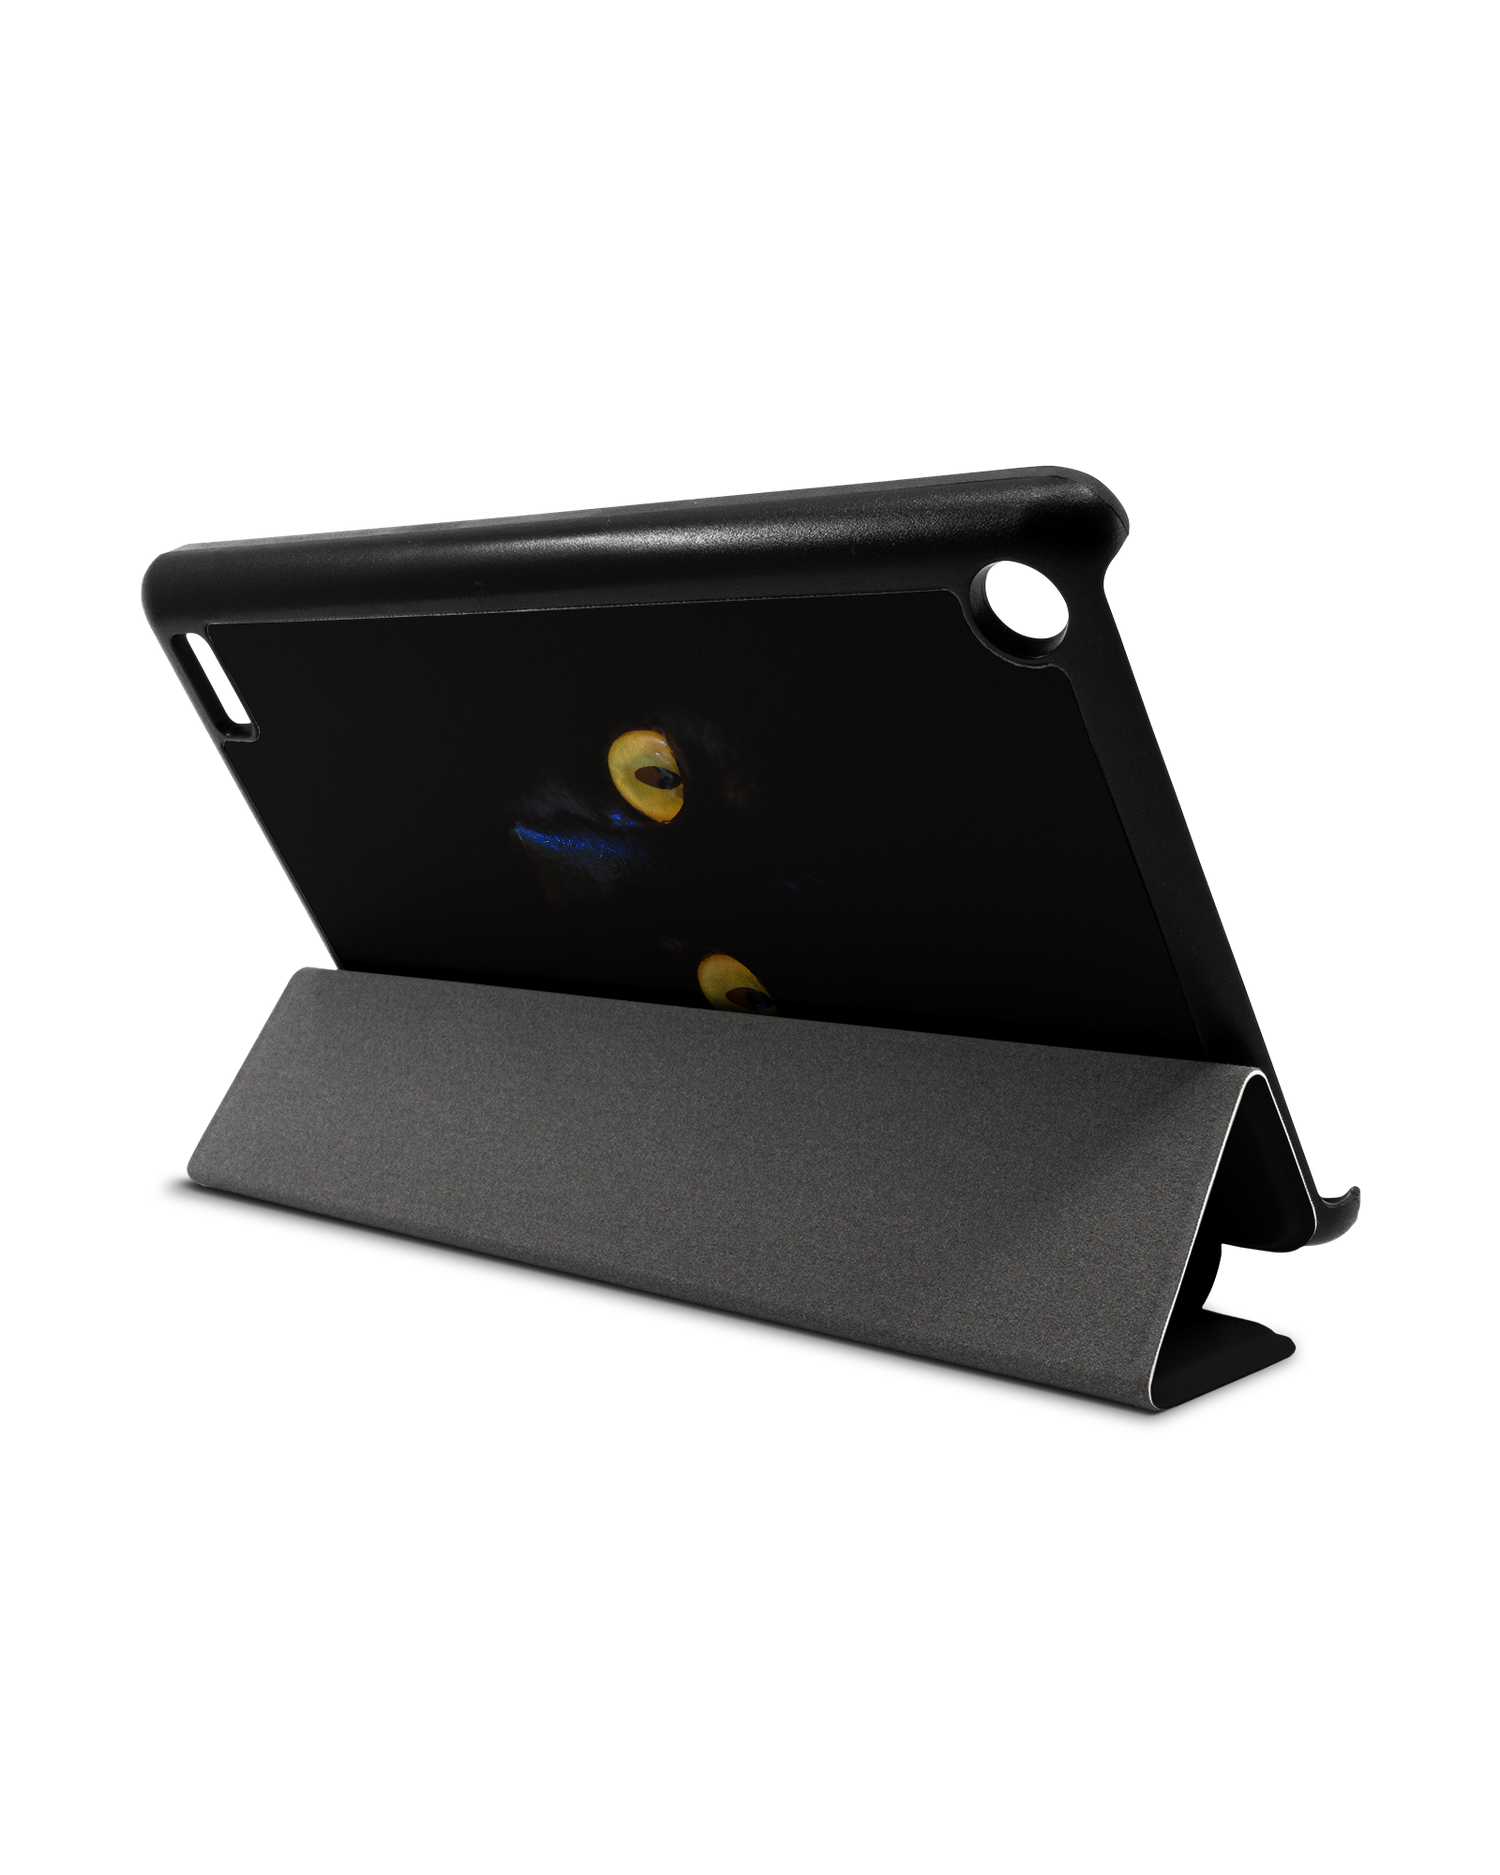 Black Cat Tablet Smart Case für Amazon Fire 7: Aufgestellt im Querformat